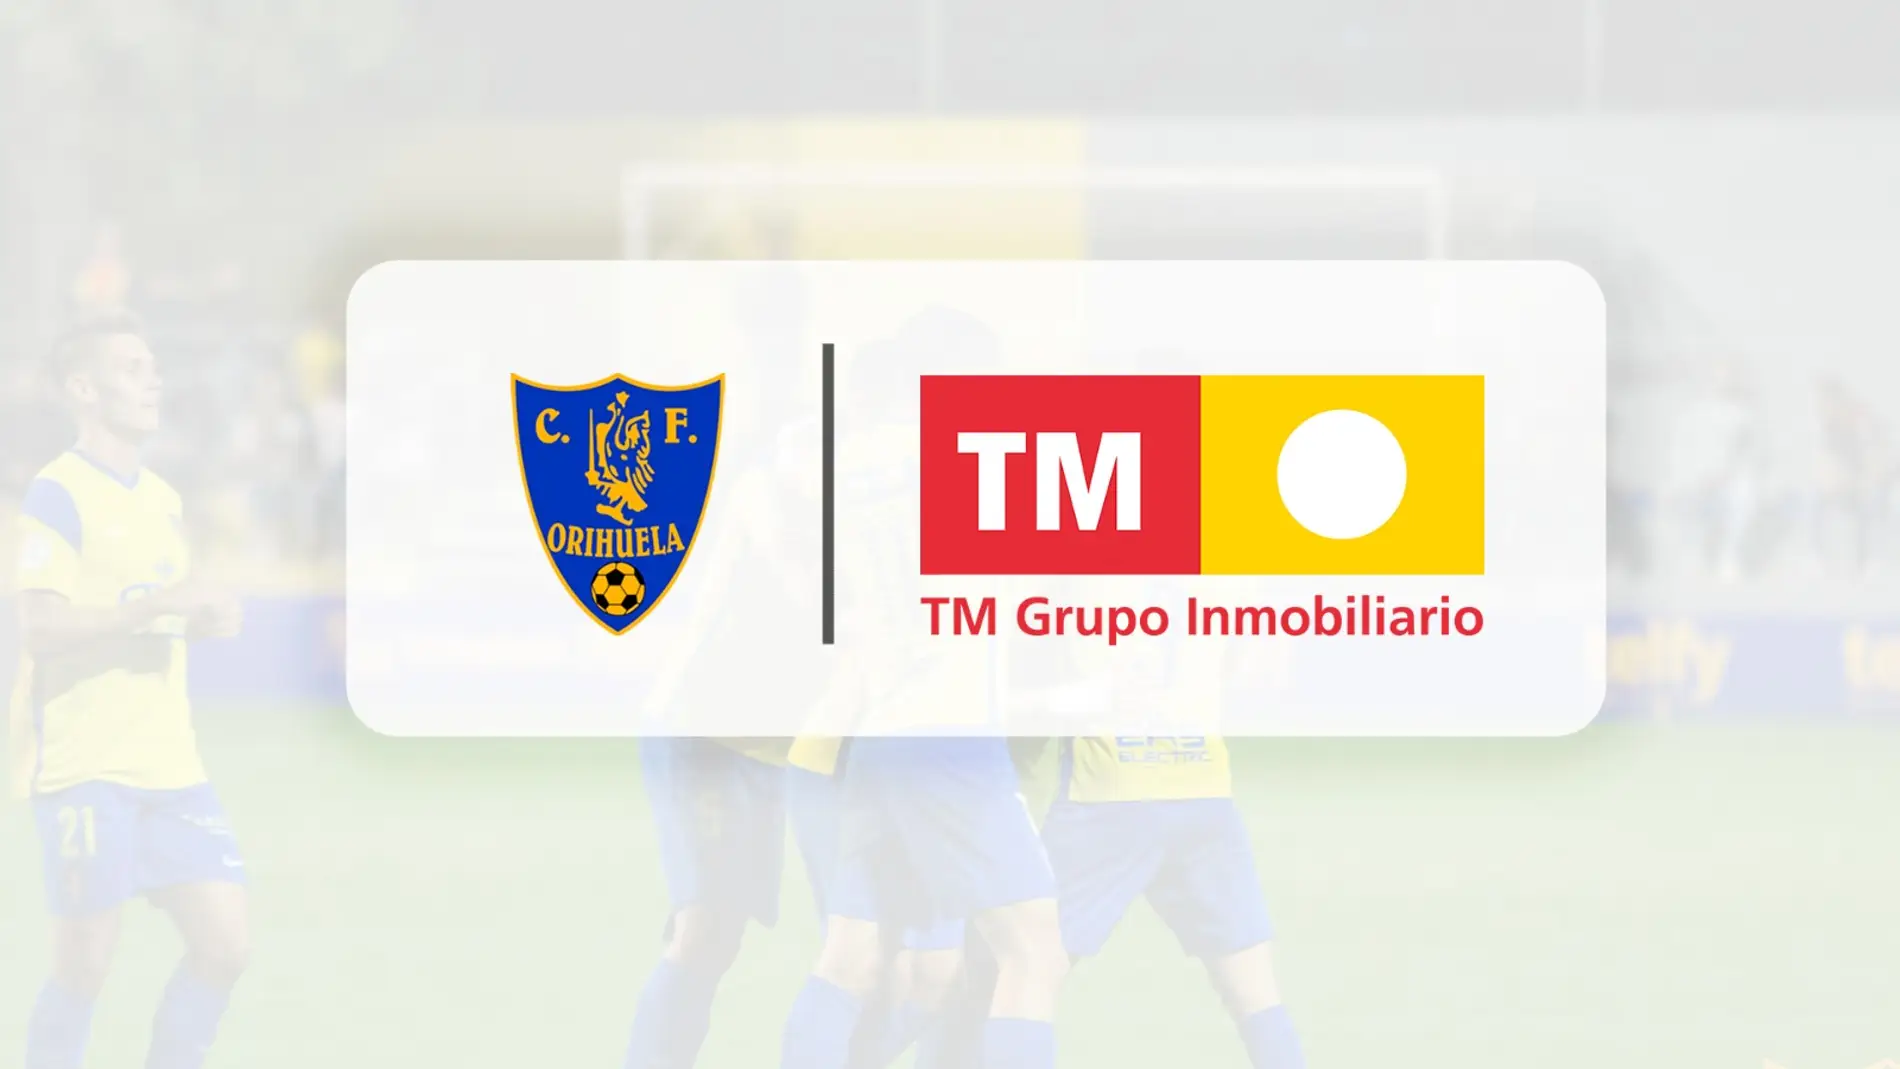 El grupo inmobiliario TM seguirá siendo patrocinador principal del Orihuela CF 